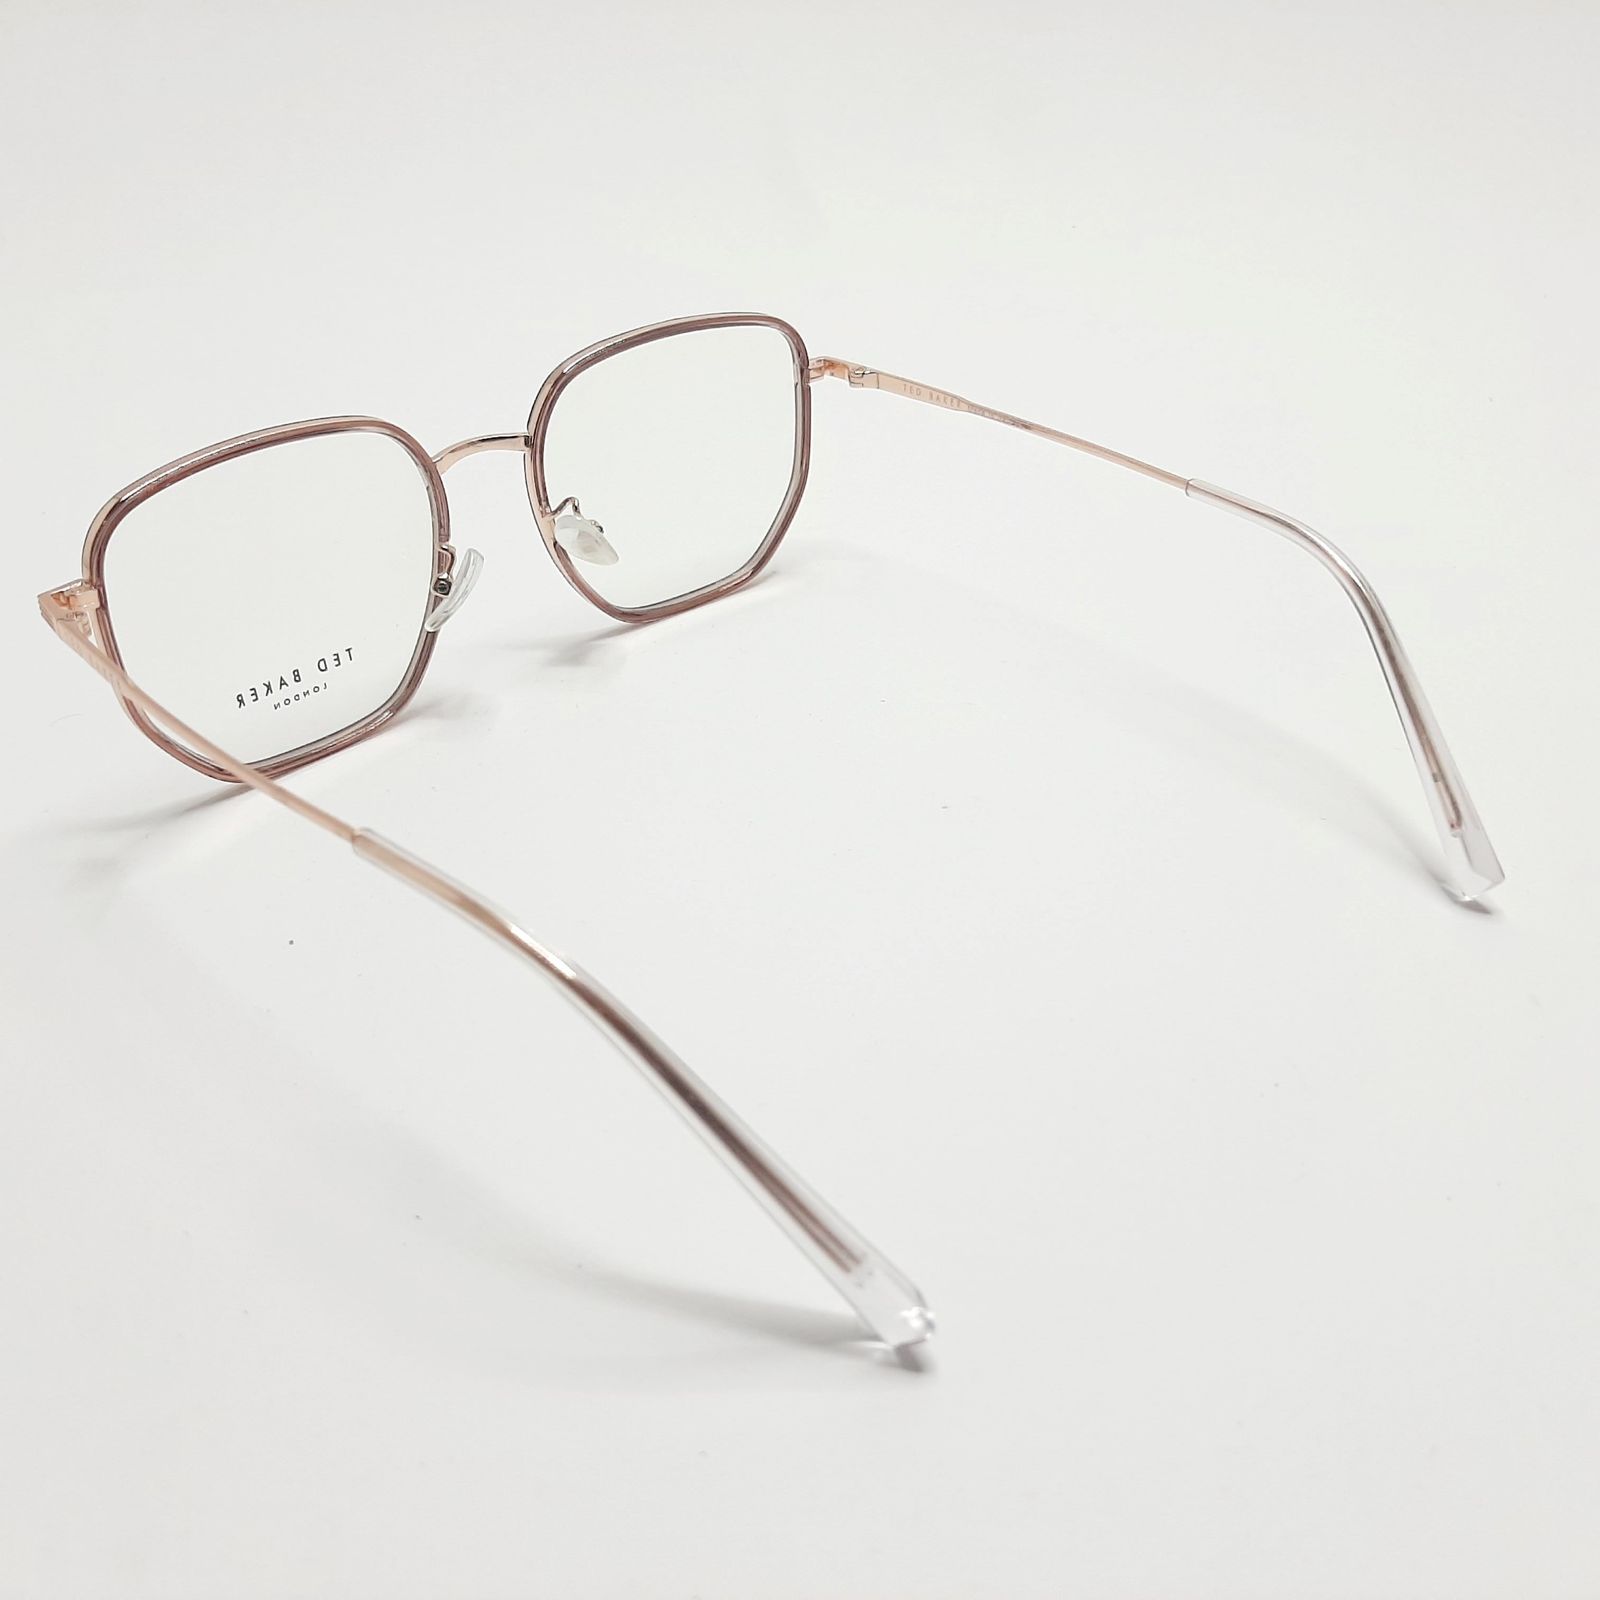 فریم عینک طبی تد بیکر مدل TB55082c3 -  - 6